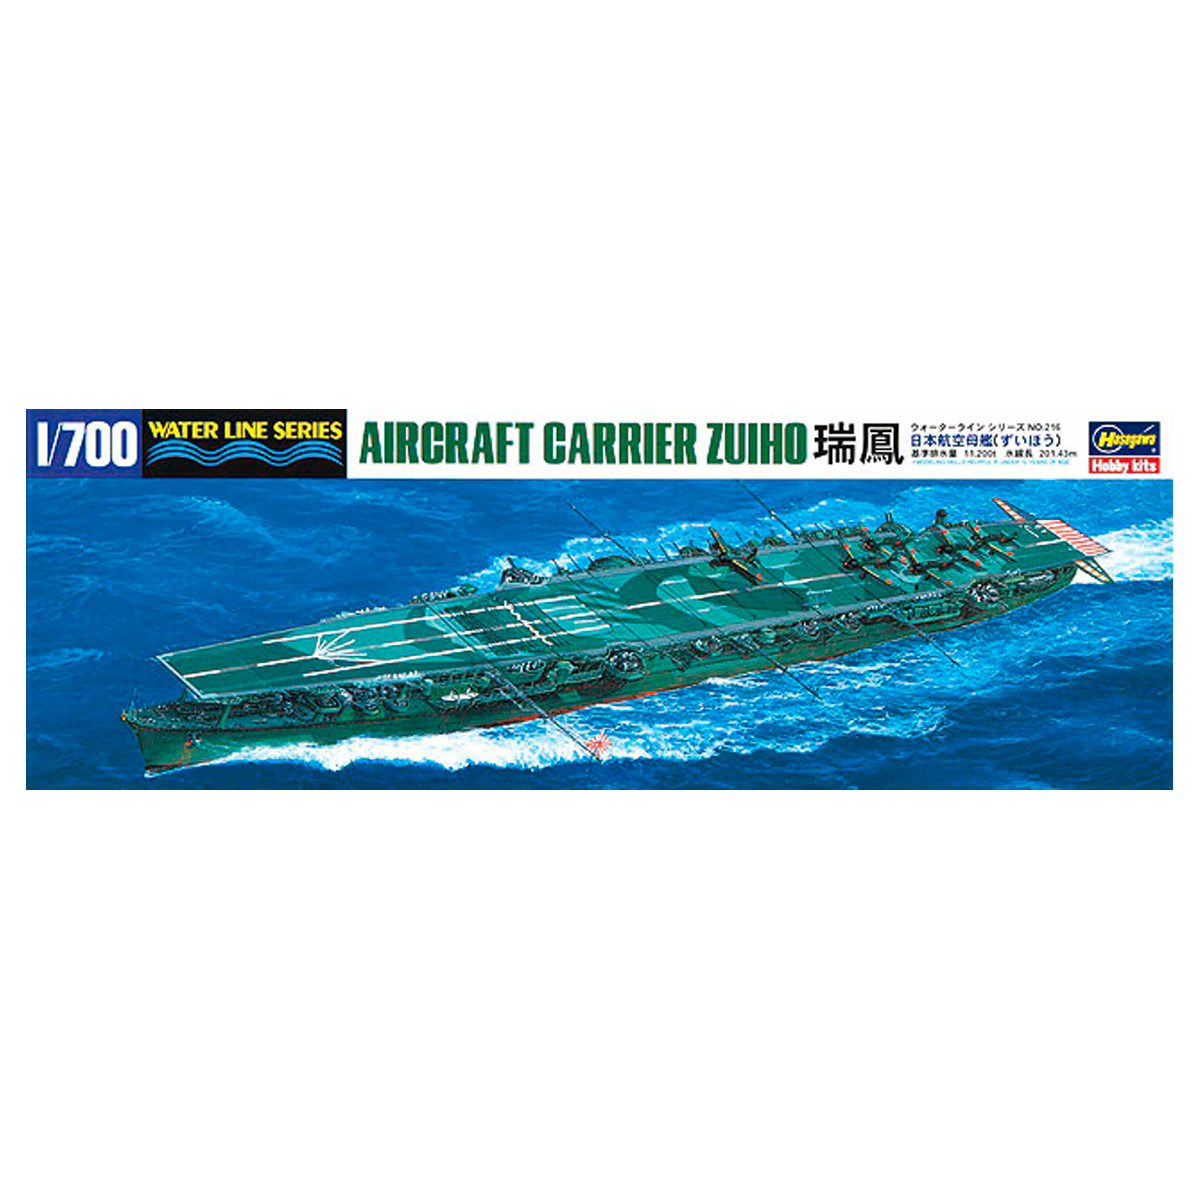 WL216-49216 1/700 Aircraft Carrier Zuiho